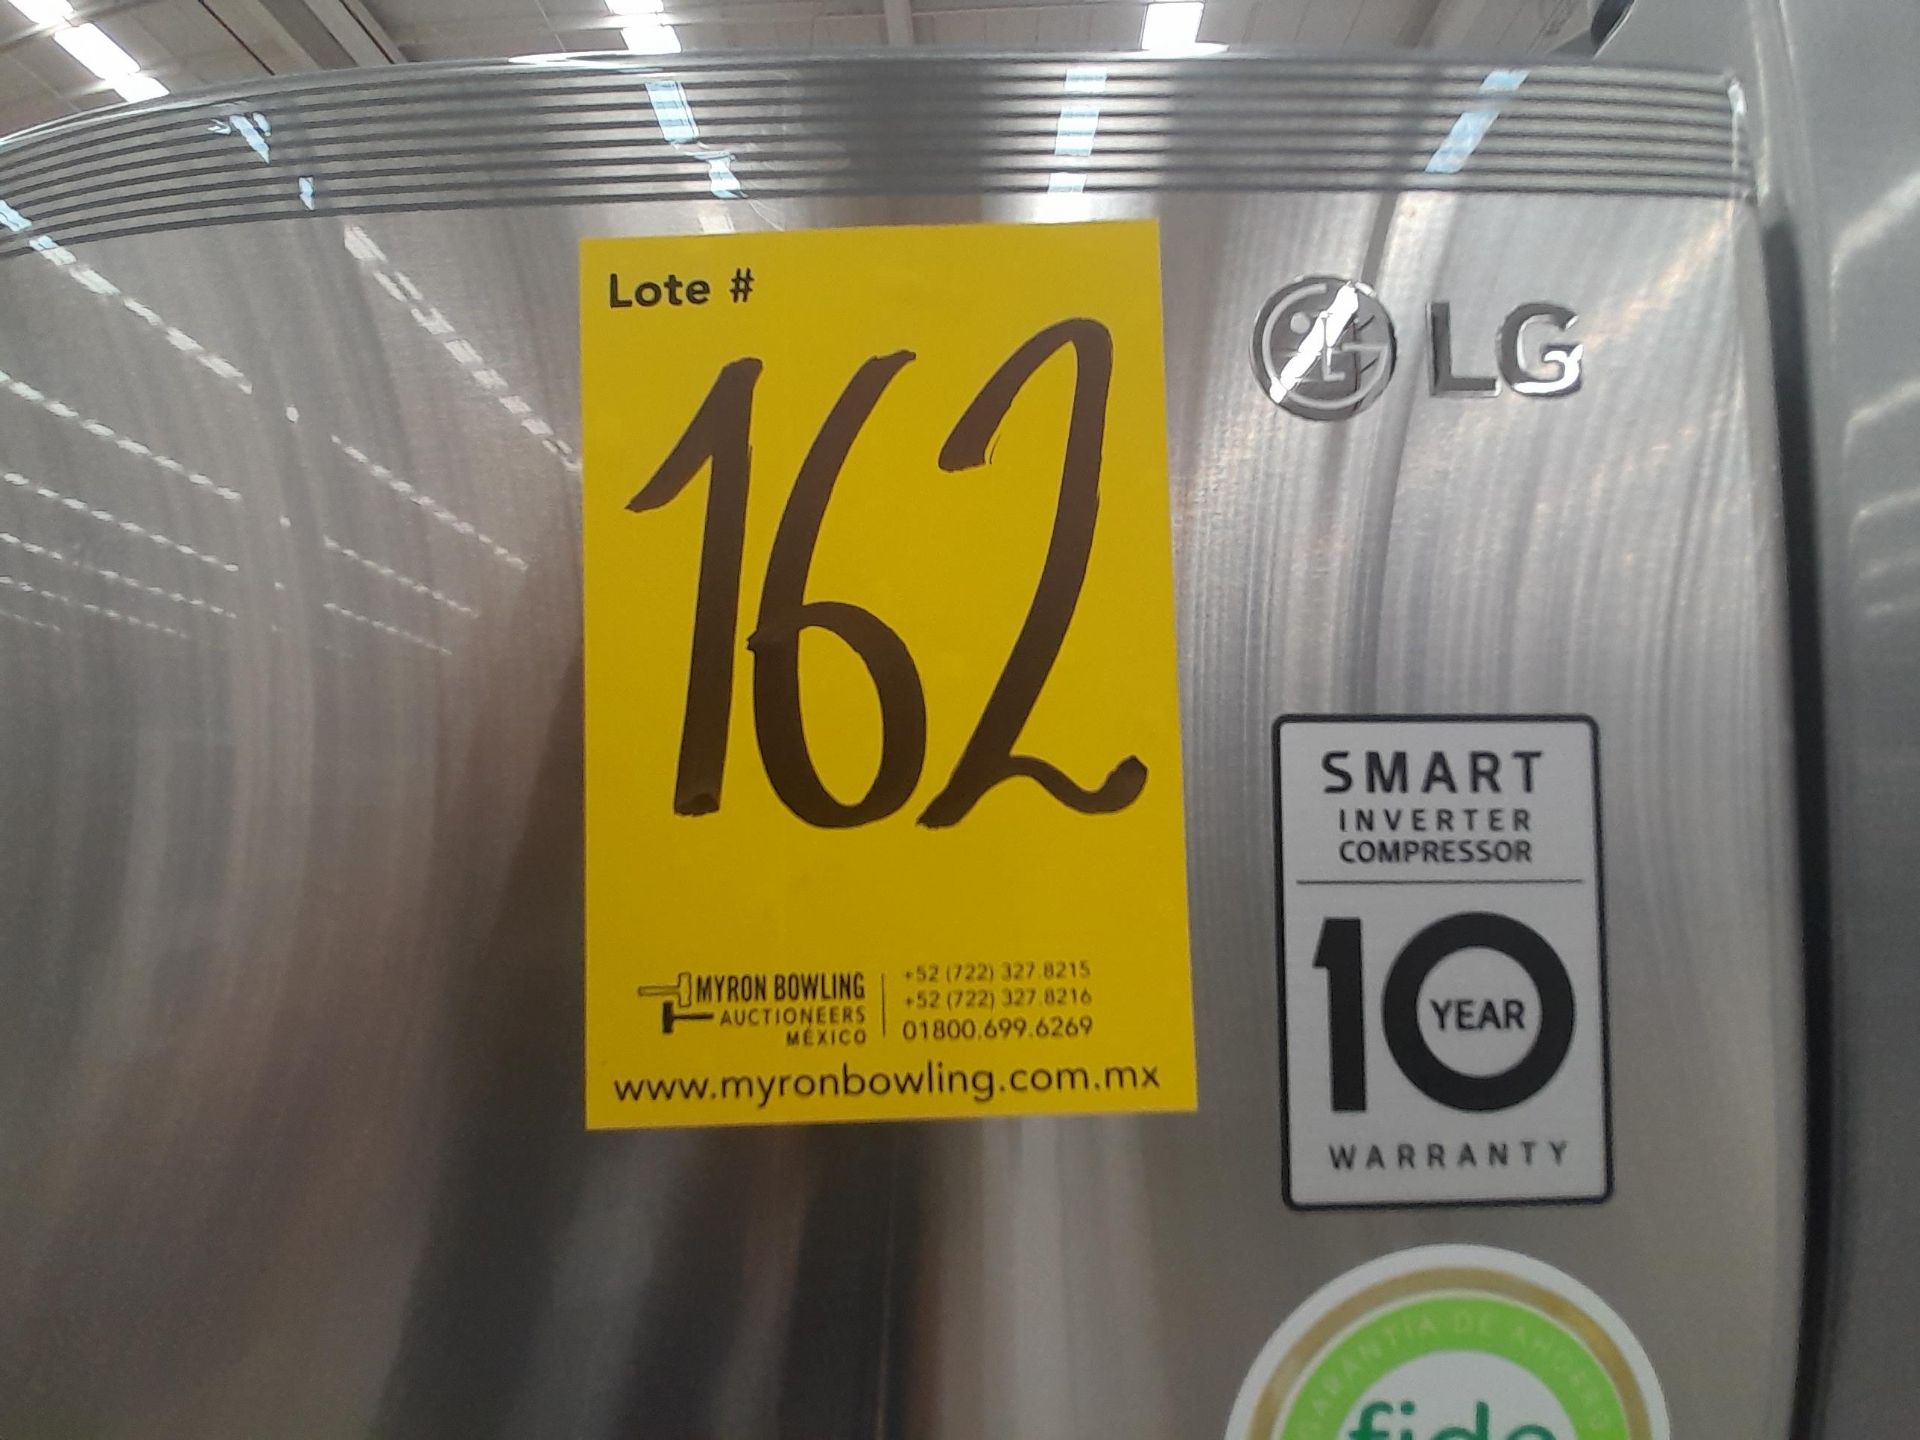 (NUEVO) Lote de 1 Refrigerador Marca LG, Modelo LT57BPSX, Serie J1R795, Color GRIS. - Image 6 of 6